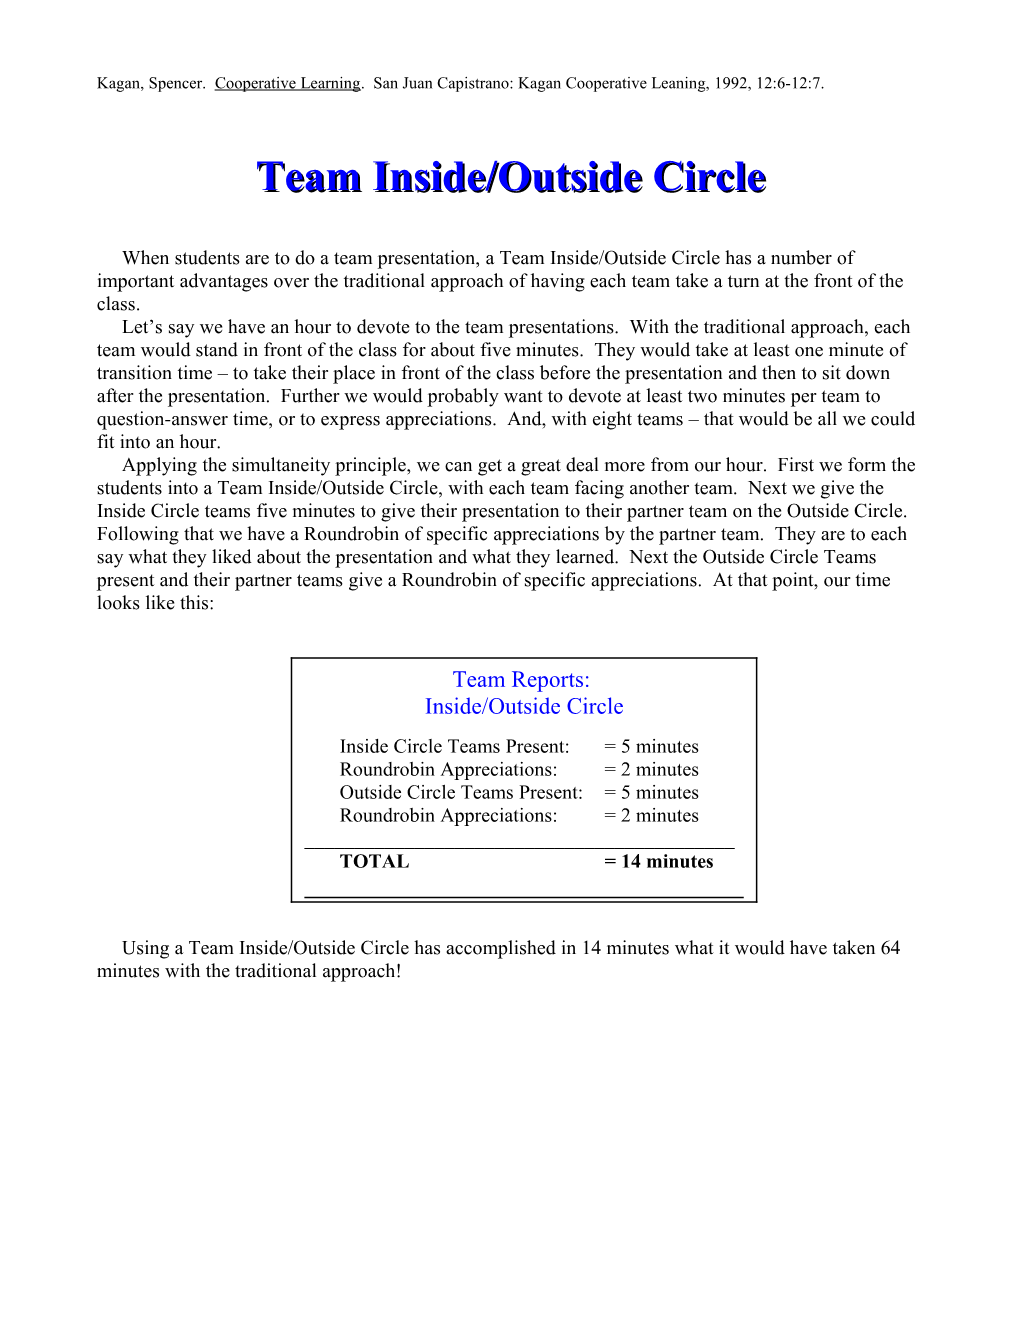 Team Inside/Outside Circle